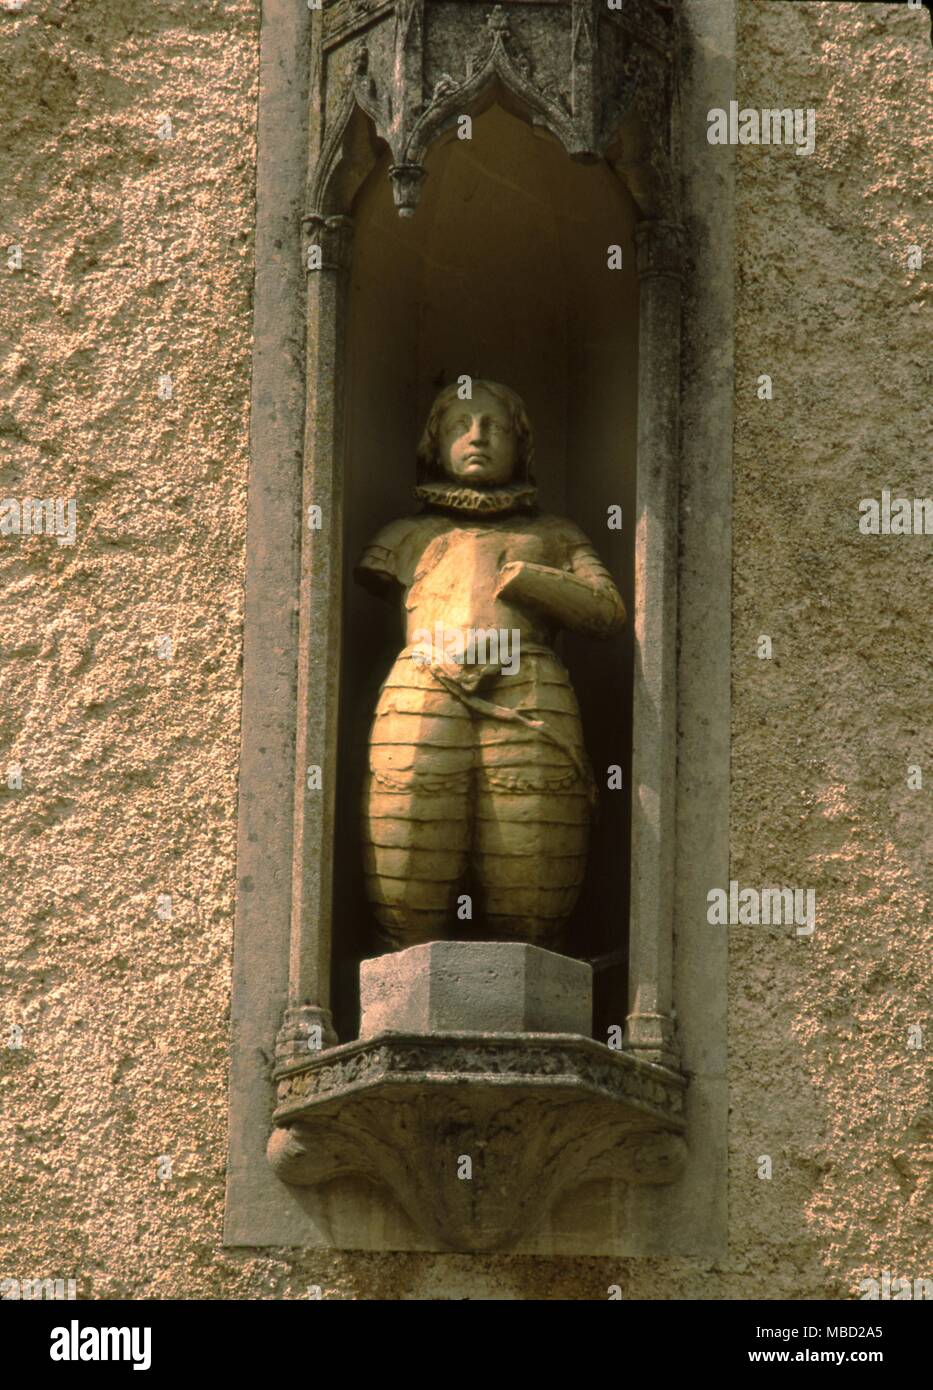 Statue de Jeanne d'Arc. La figure est situé dans une niche sur la façade de la maison à Domremy, où elle est censée avoir été né. Banque D'Images